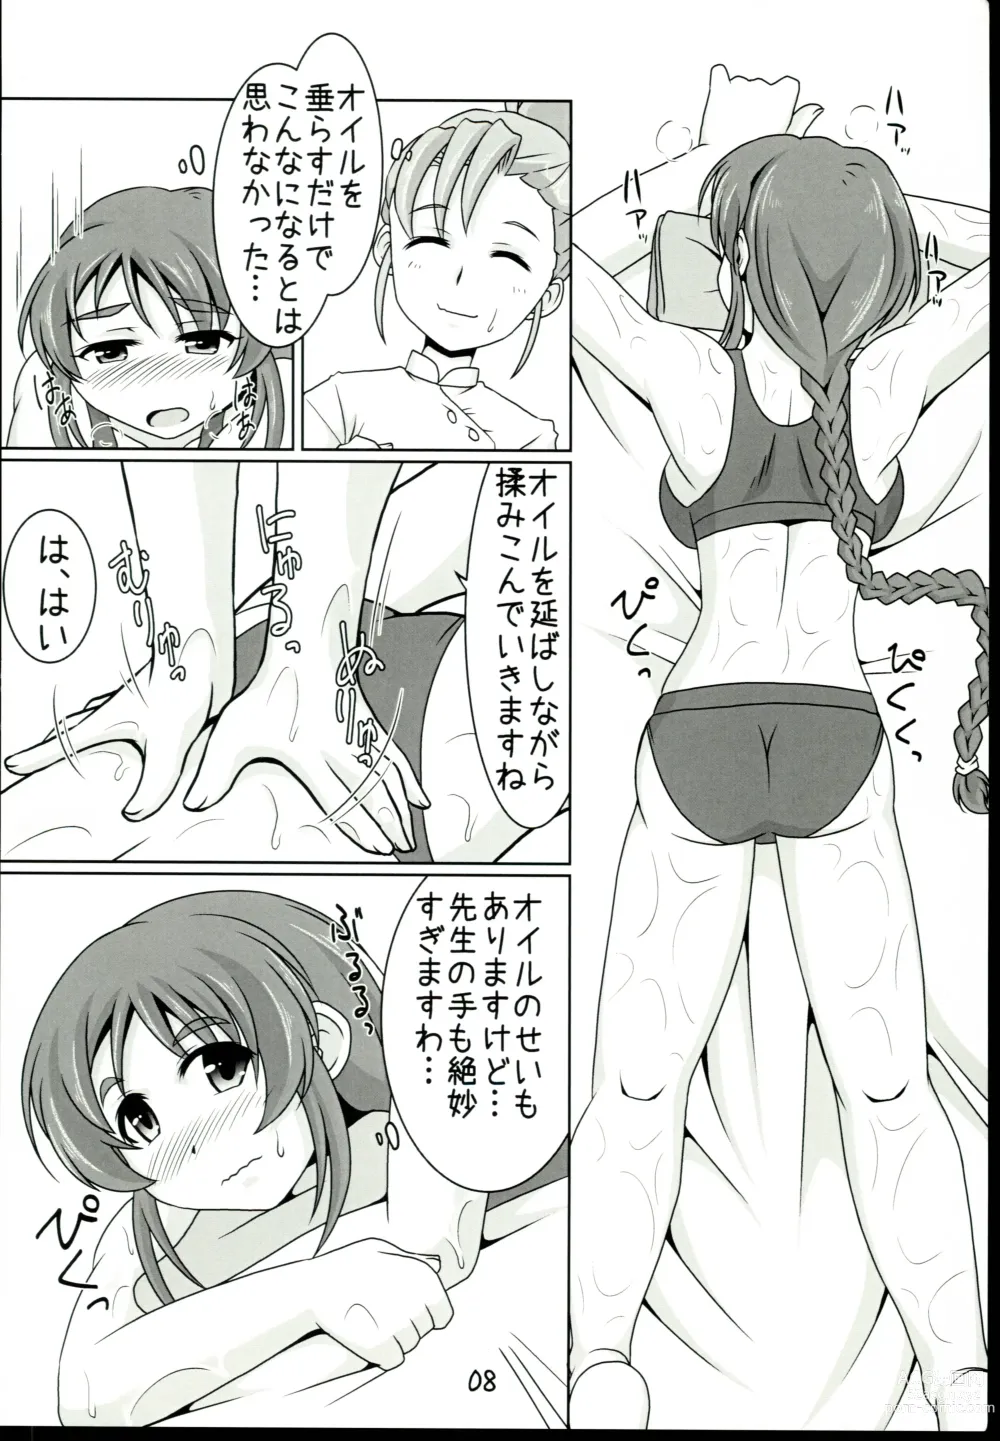 Page 8 of doujinshi Aihara-san no Mamoru mo Semeru mo